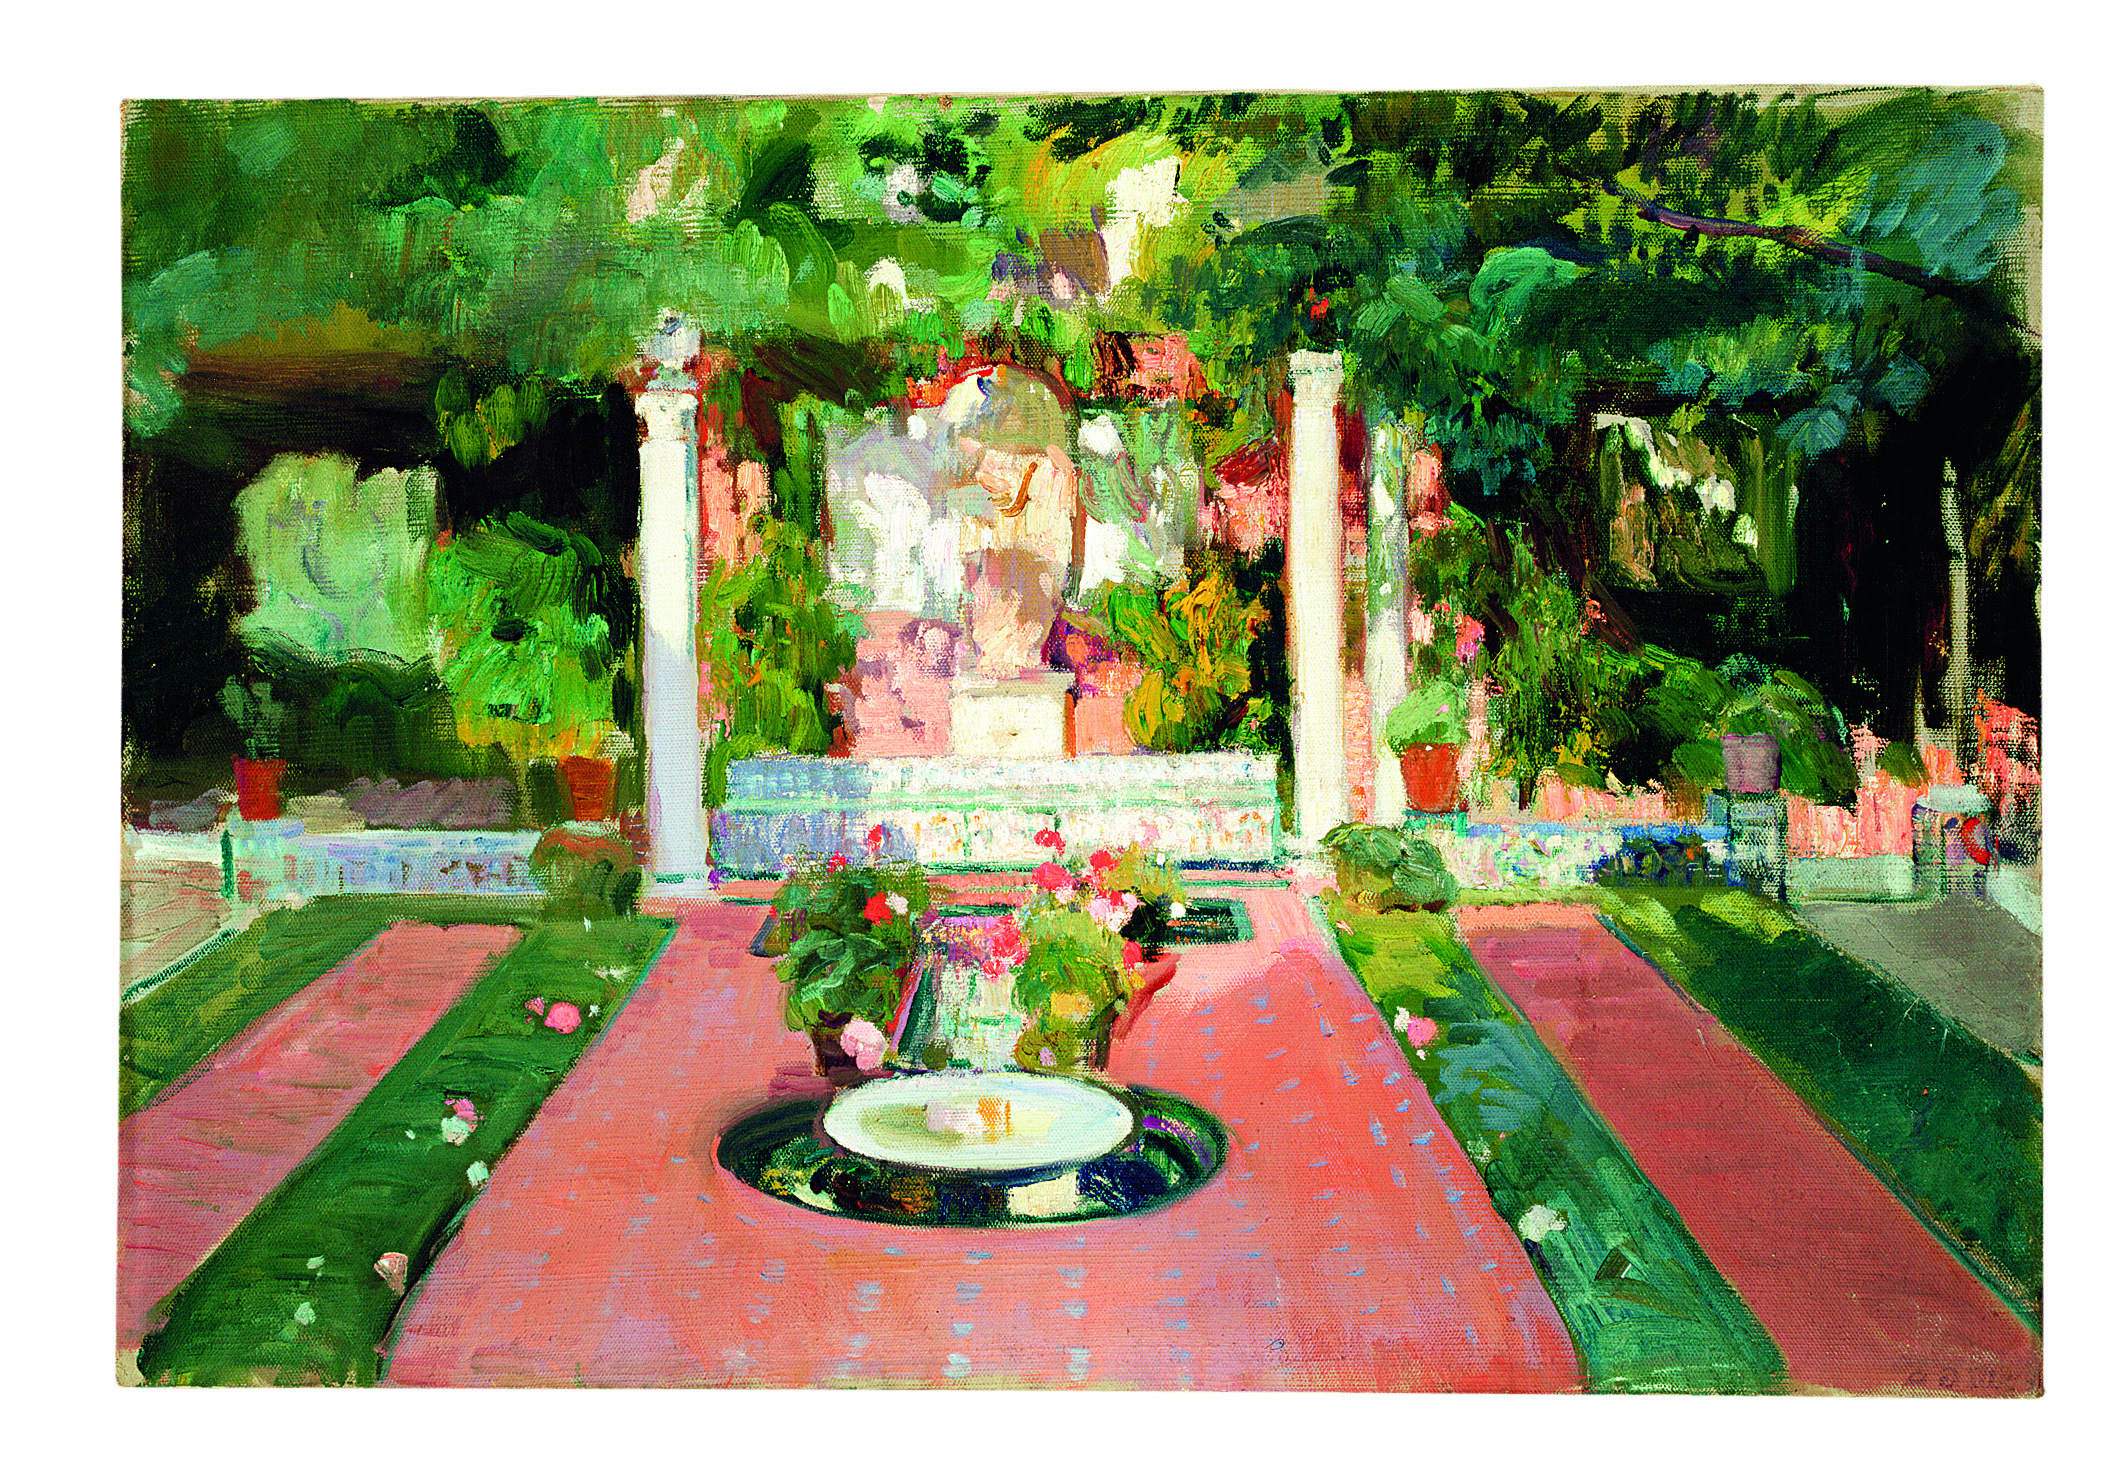 ソローリャ美術館の庭園 by Joaquín Sorolla - 1918年頃 - 65 x 96 cm 